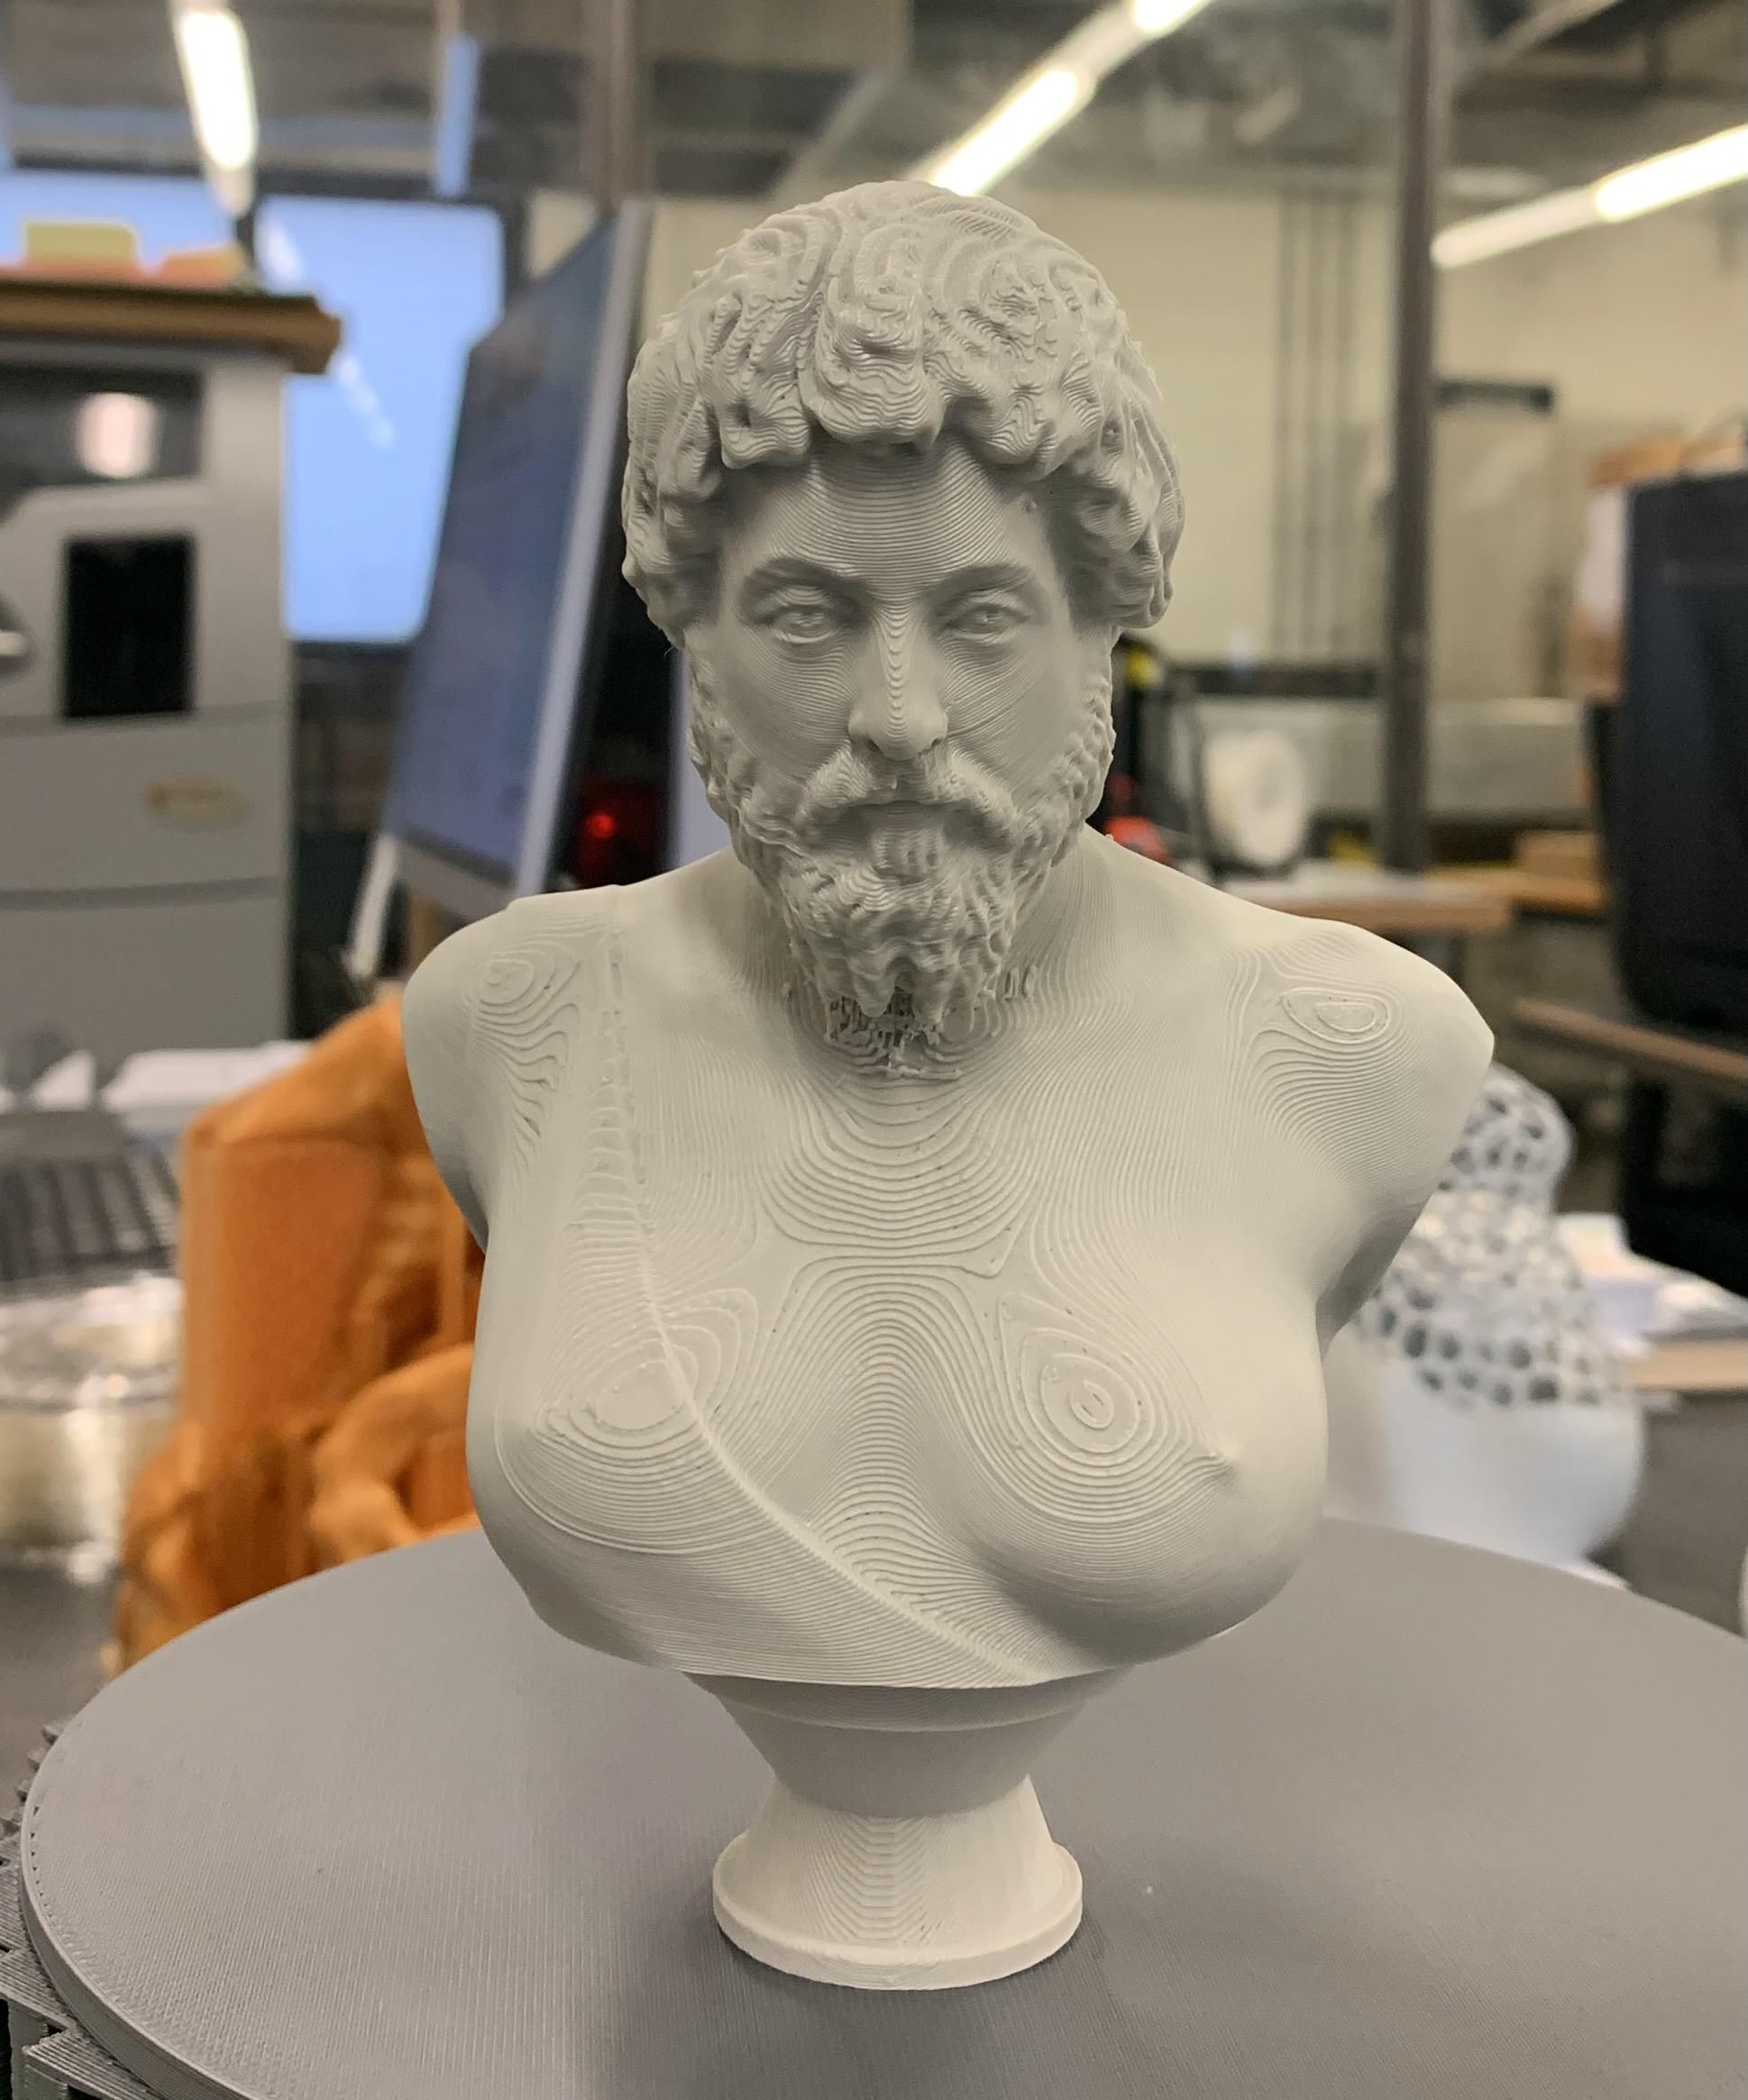 A Busty Bust of Marcus Aurelius